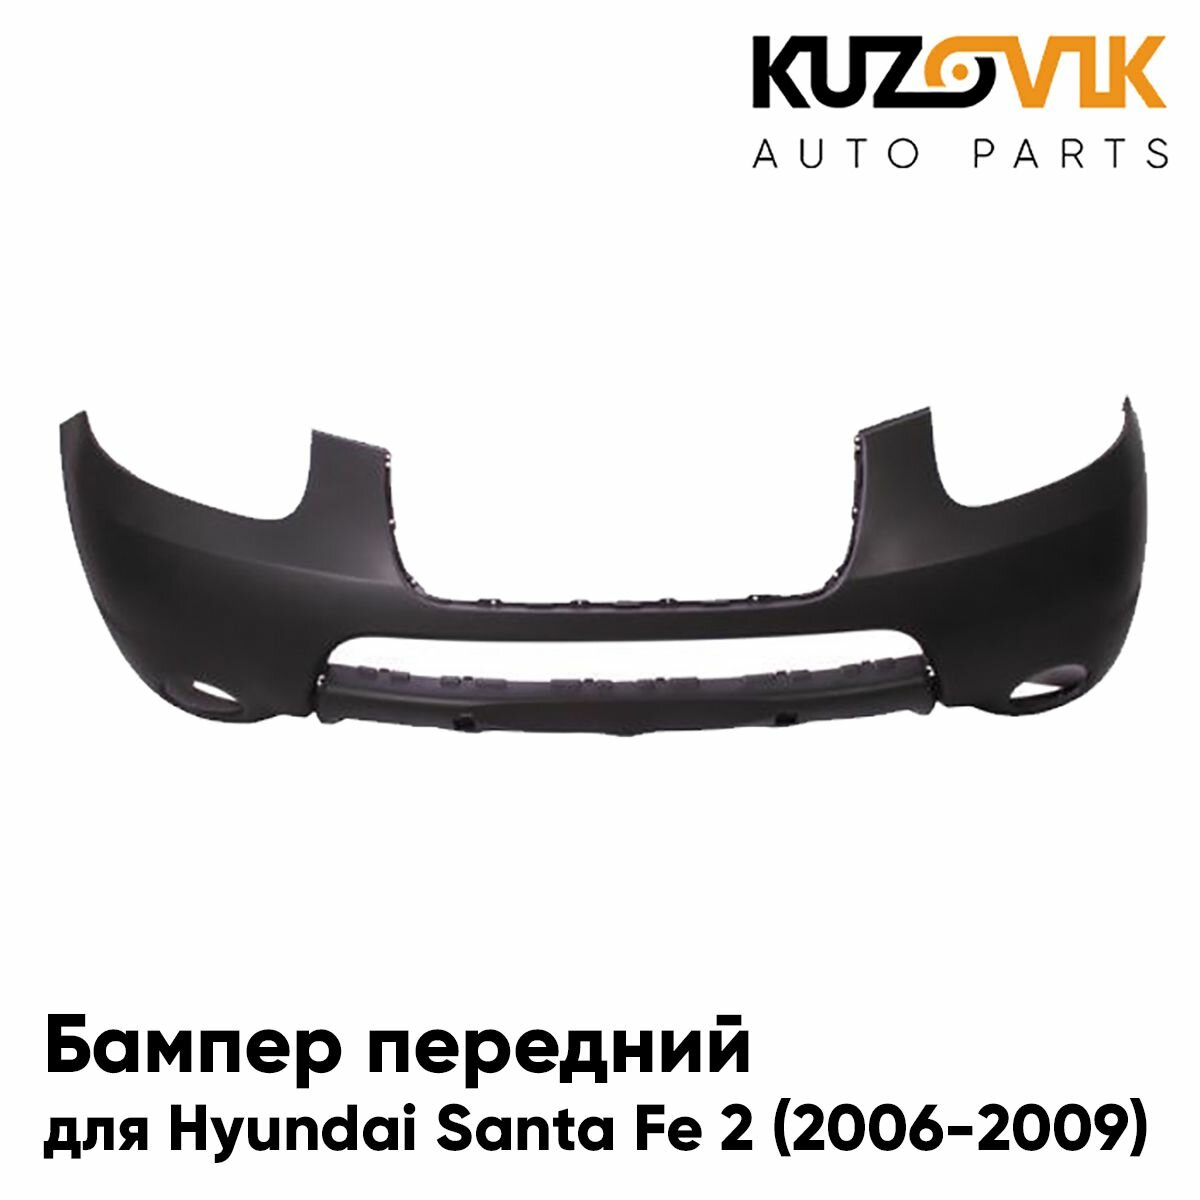 Бампер передний для Хендай Санта Фе 2 Hyundai Santa Fe 2 (2006-2009) дорестайлинг